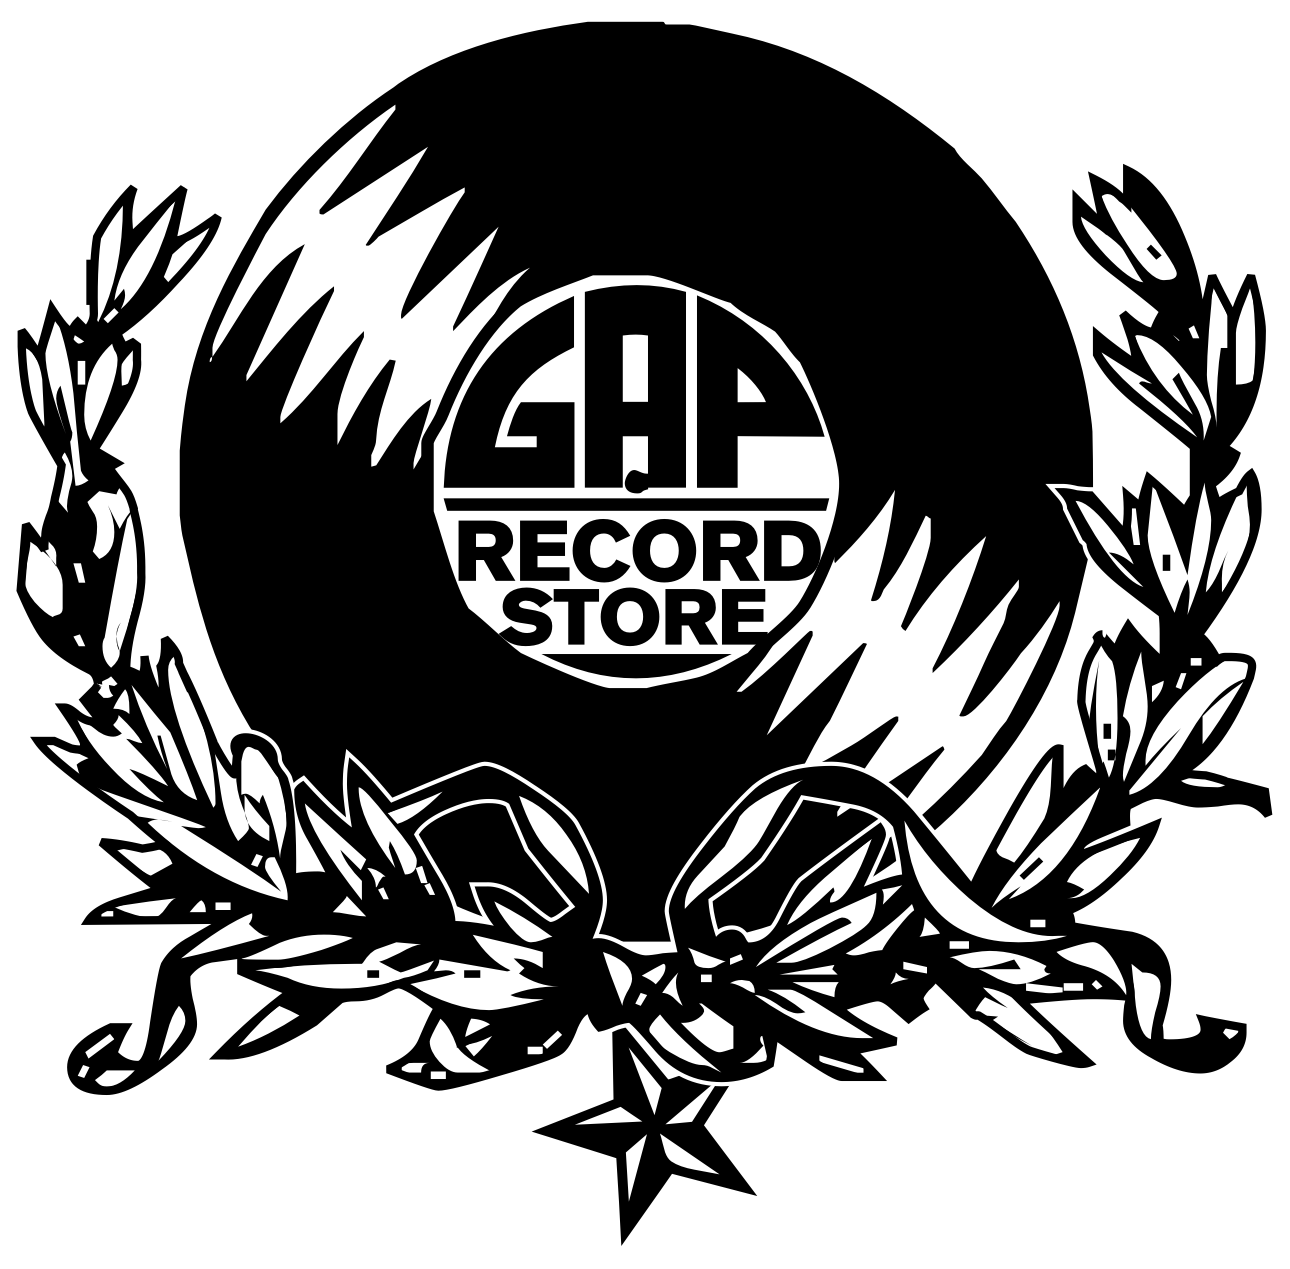 GAP Record Store - Dischi rari e da collezione